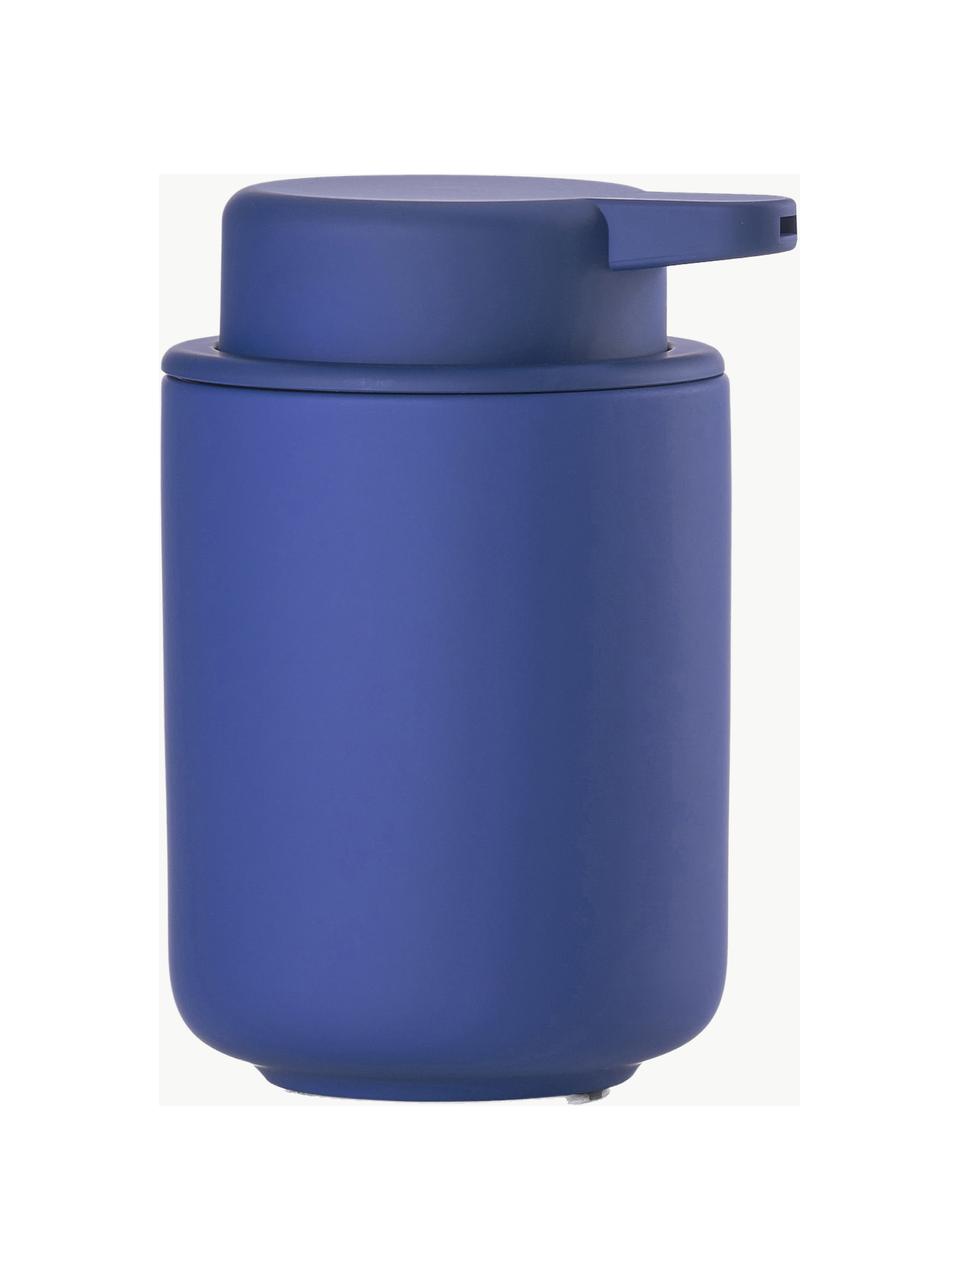 Seifenspender Ume mit Soft-Touch-Oberfläche, Behälter: Steingut überzogen mit So, Royalblau, Ø 8 x H 13 cm